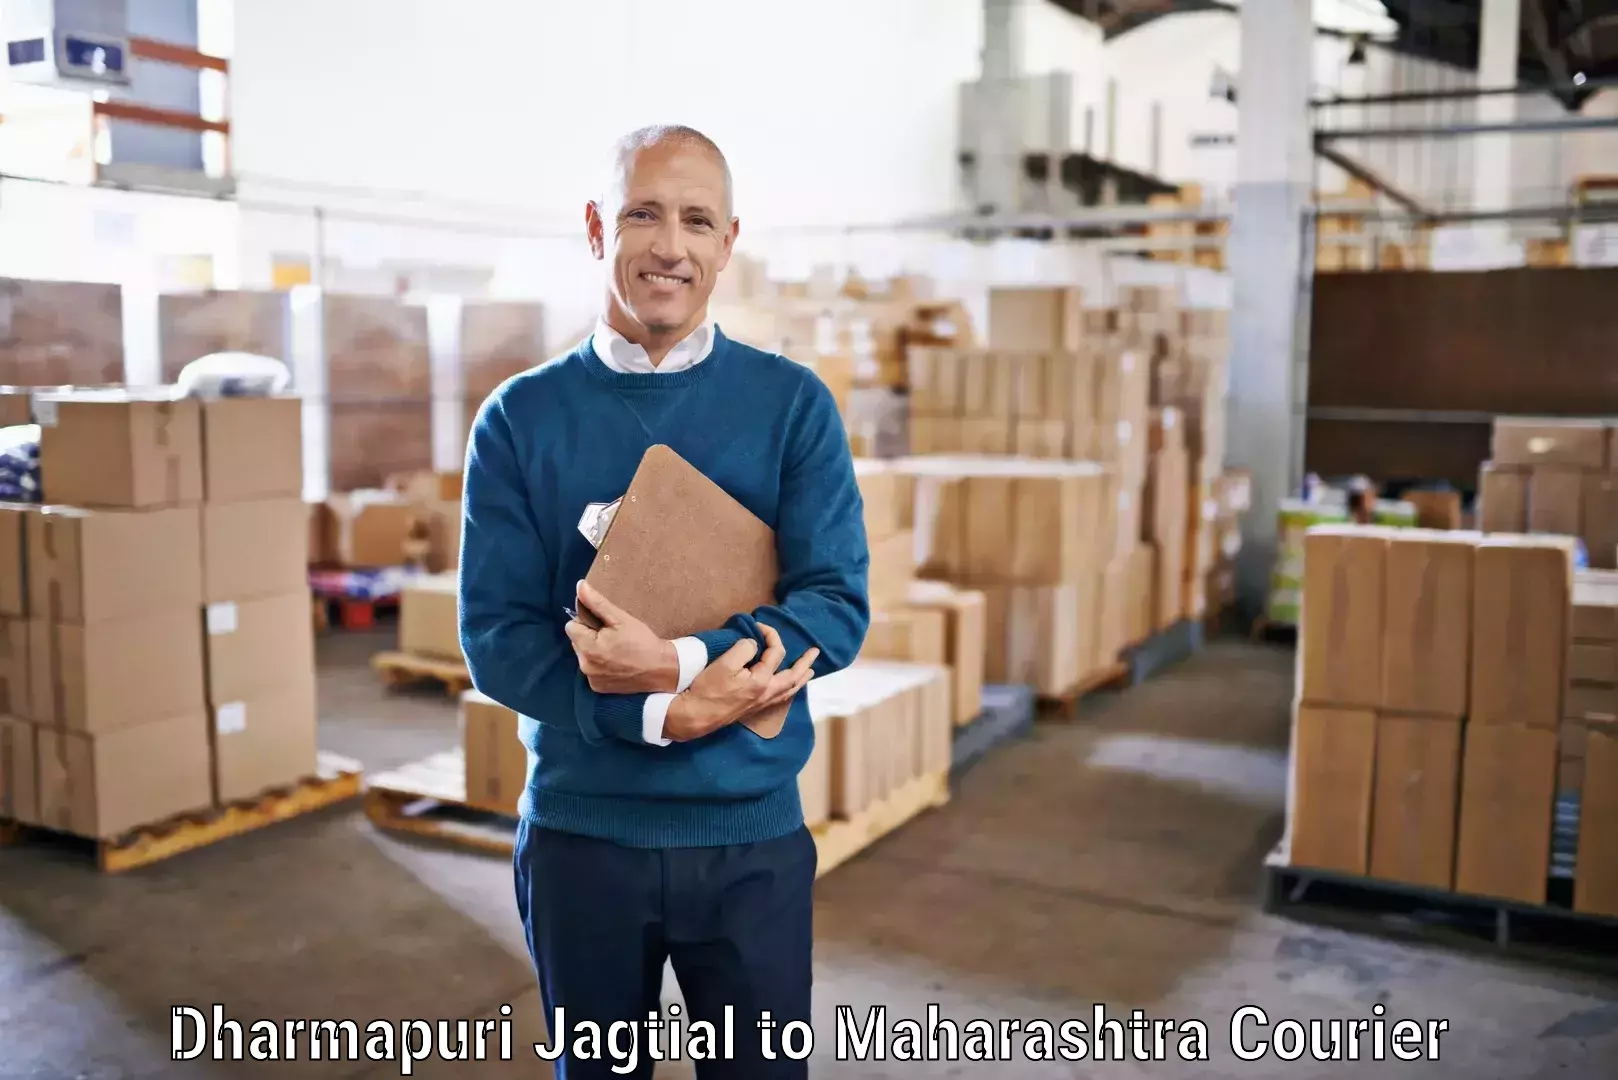 Premium courier solutions Dharmapuri Jagtial to Kolhapur